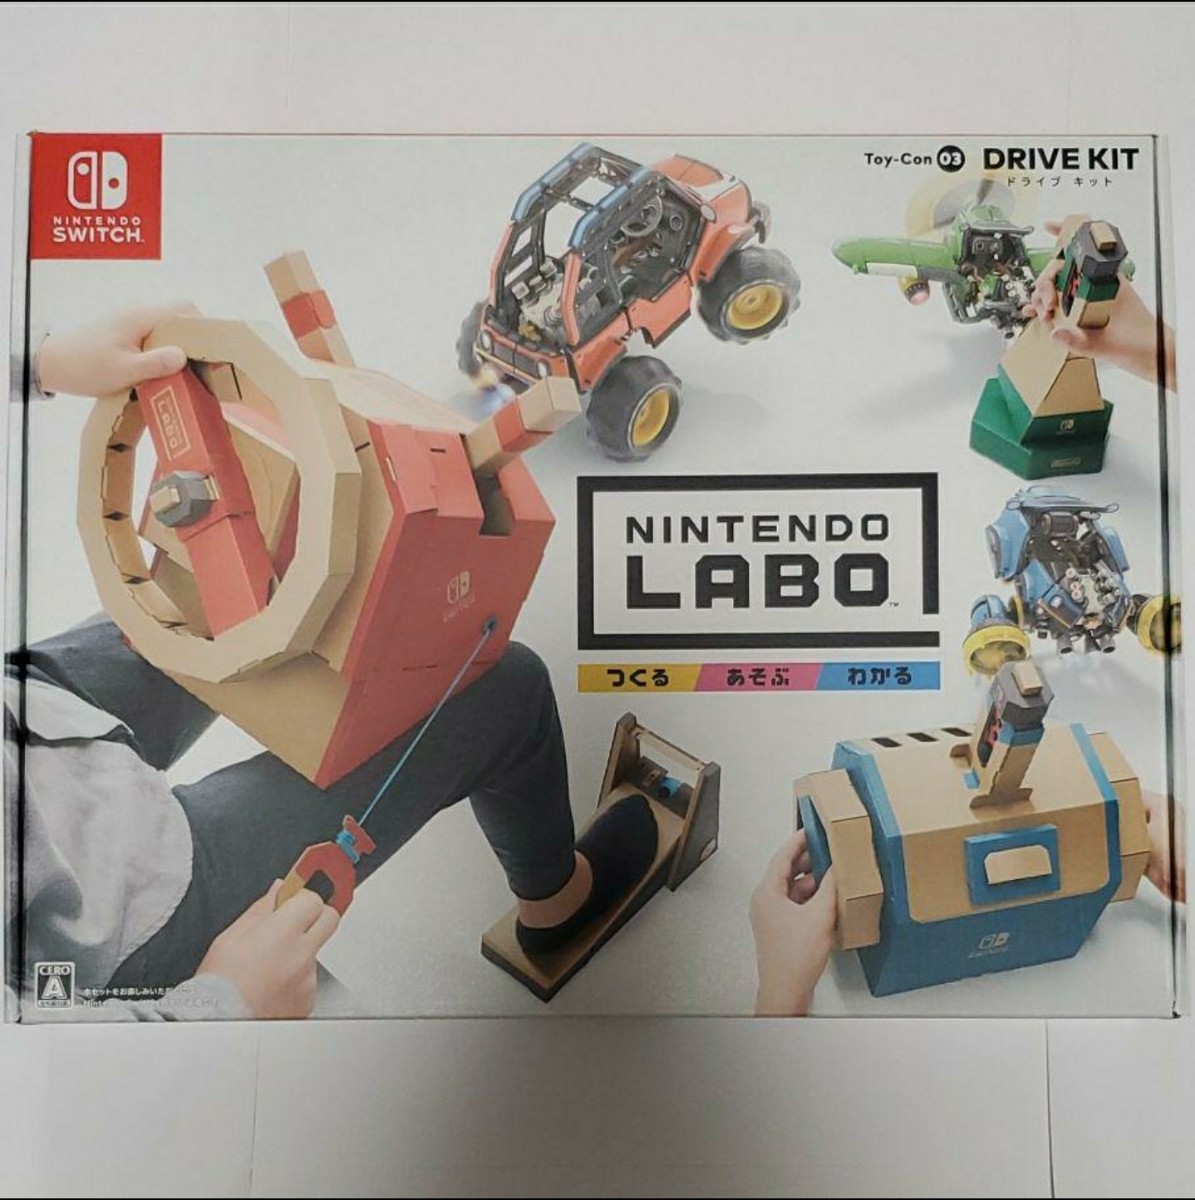 Nintendo Labo(ニンテンドーラボ) 03 Drive Kitドライブキット 